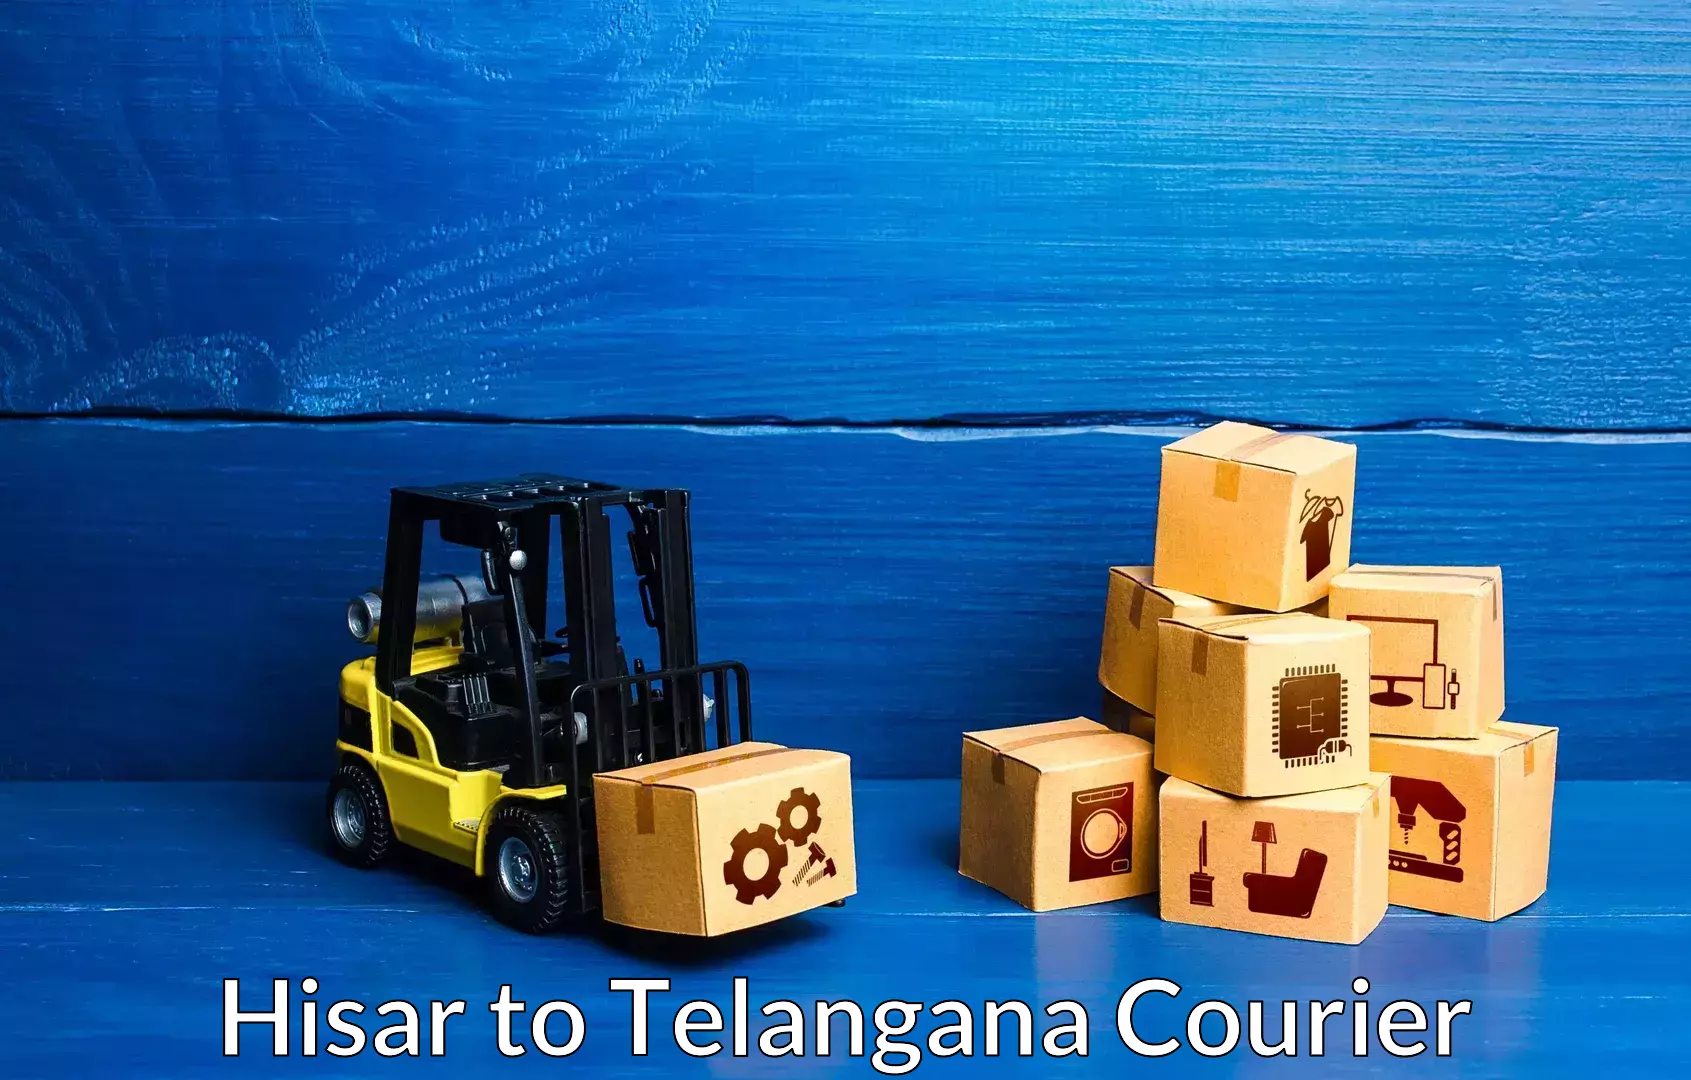 Budget-friendly movers Hisar to Telangana